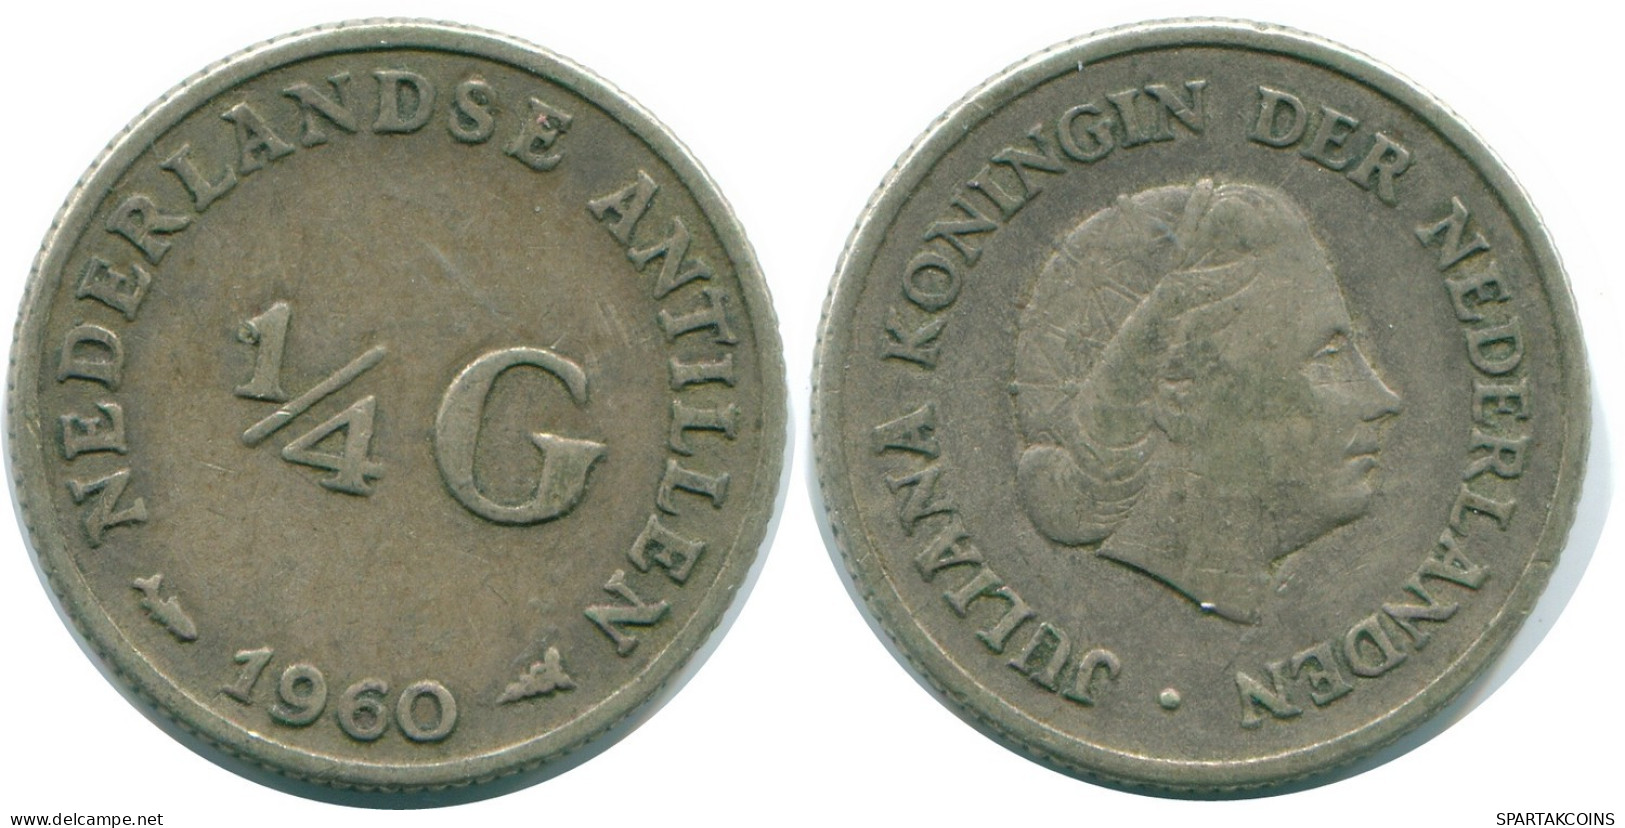 1/4 GULDEN 1960 NIEDERLÄNDISCHE ANTILLEN SILBER Koloniale Münze #NL11092.4.D.A - Niederländische Antillen